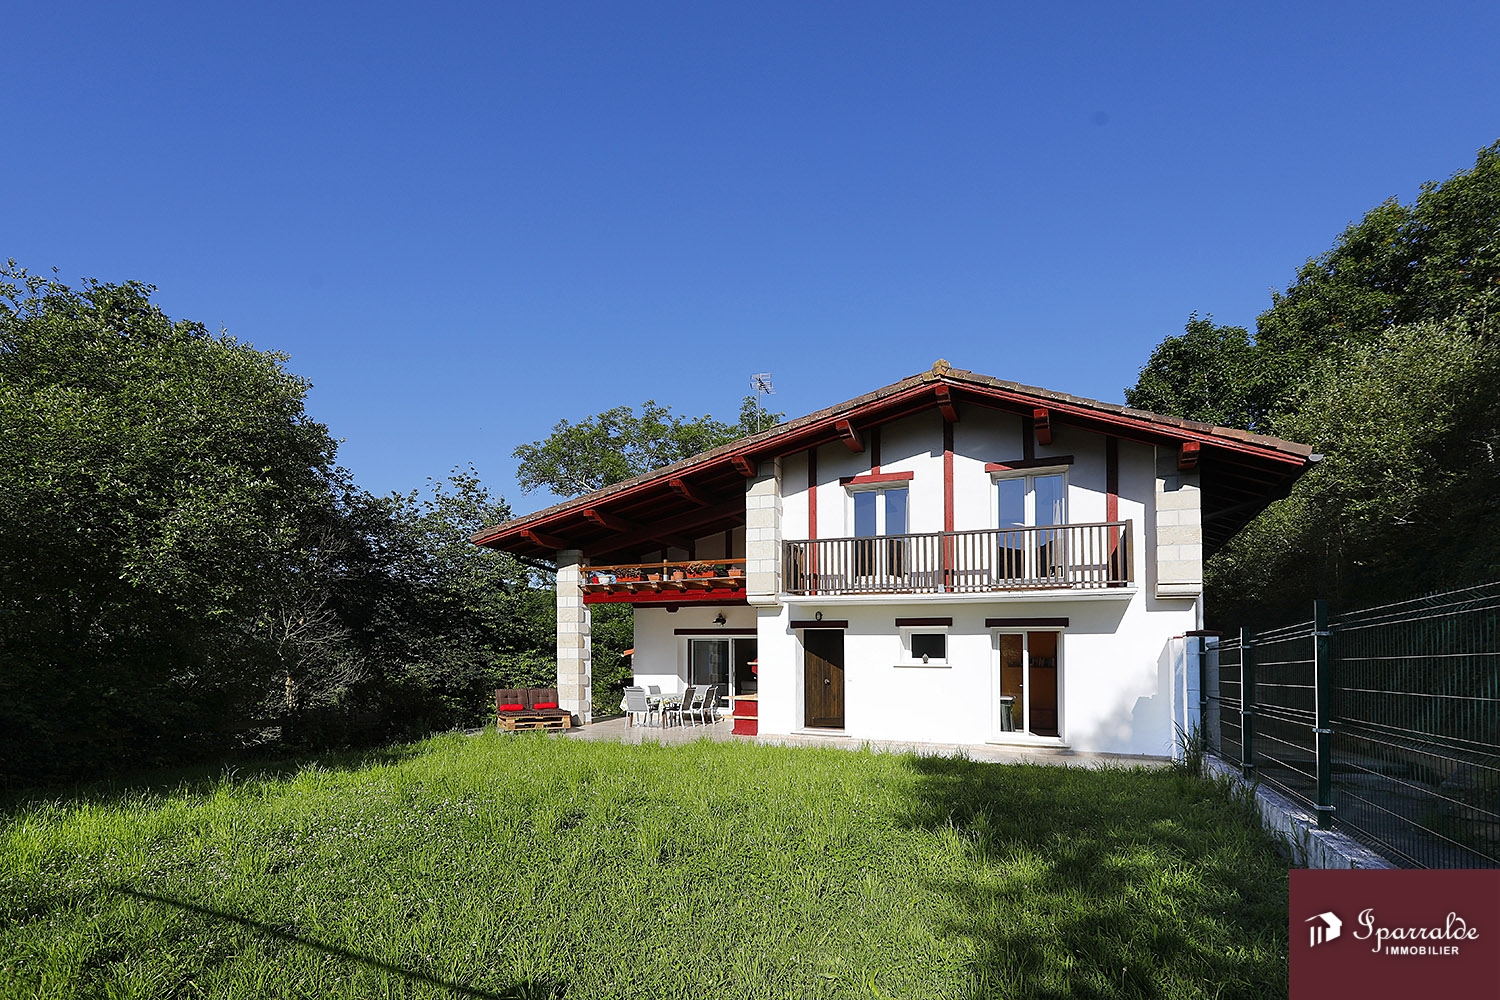 Magnifique Maison bifamiliale de style Basque à acheter, située à ...